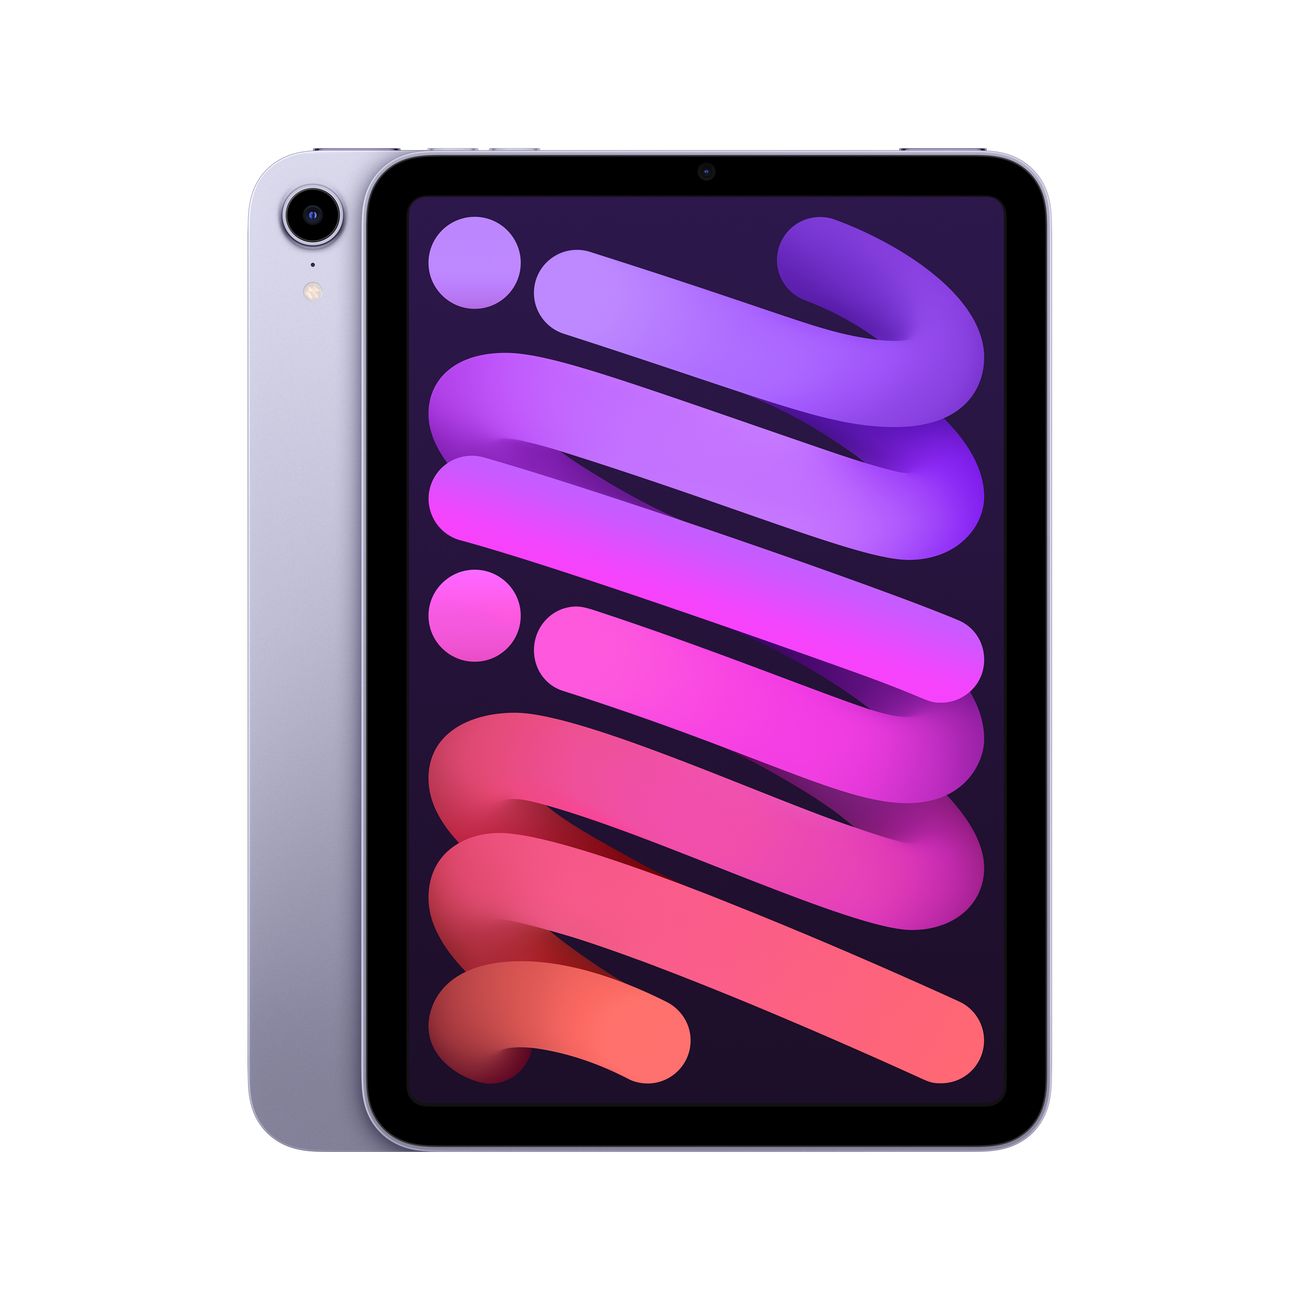 Купить планшет apple ipad mini wi-fi+cell 256gb purple (mk8k3) Apple iPad mini в официальном магазине Apple, Samsung, Xiaomi. iPixel.ru Купить, заказ, кредит, рассрочка, отзывы,  характеристики, цена,  фотографии, в подарок.